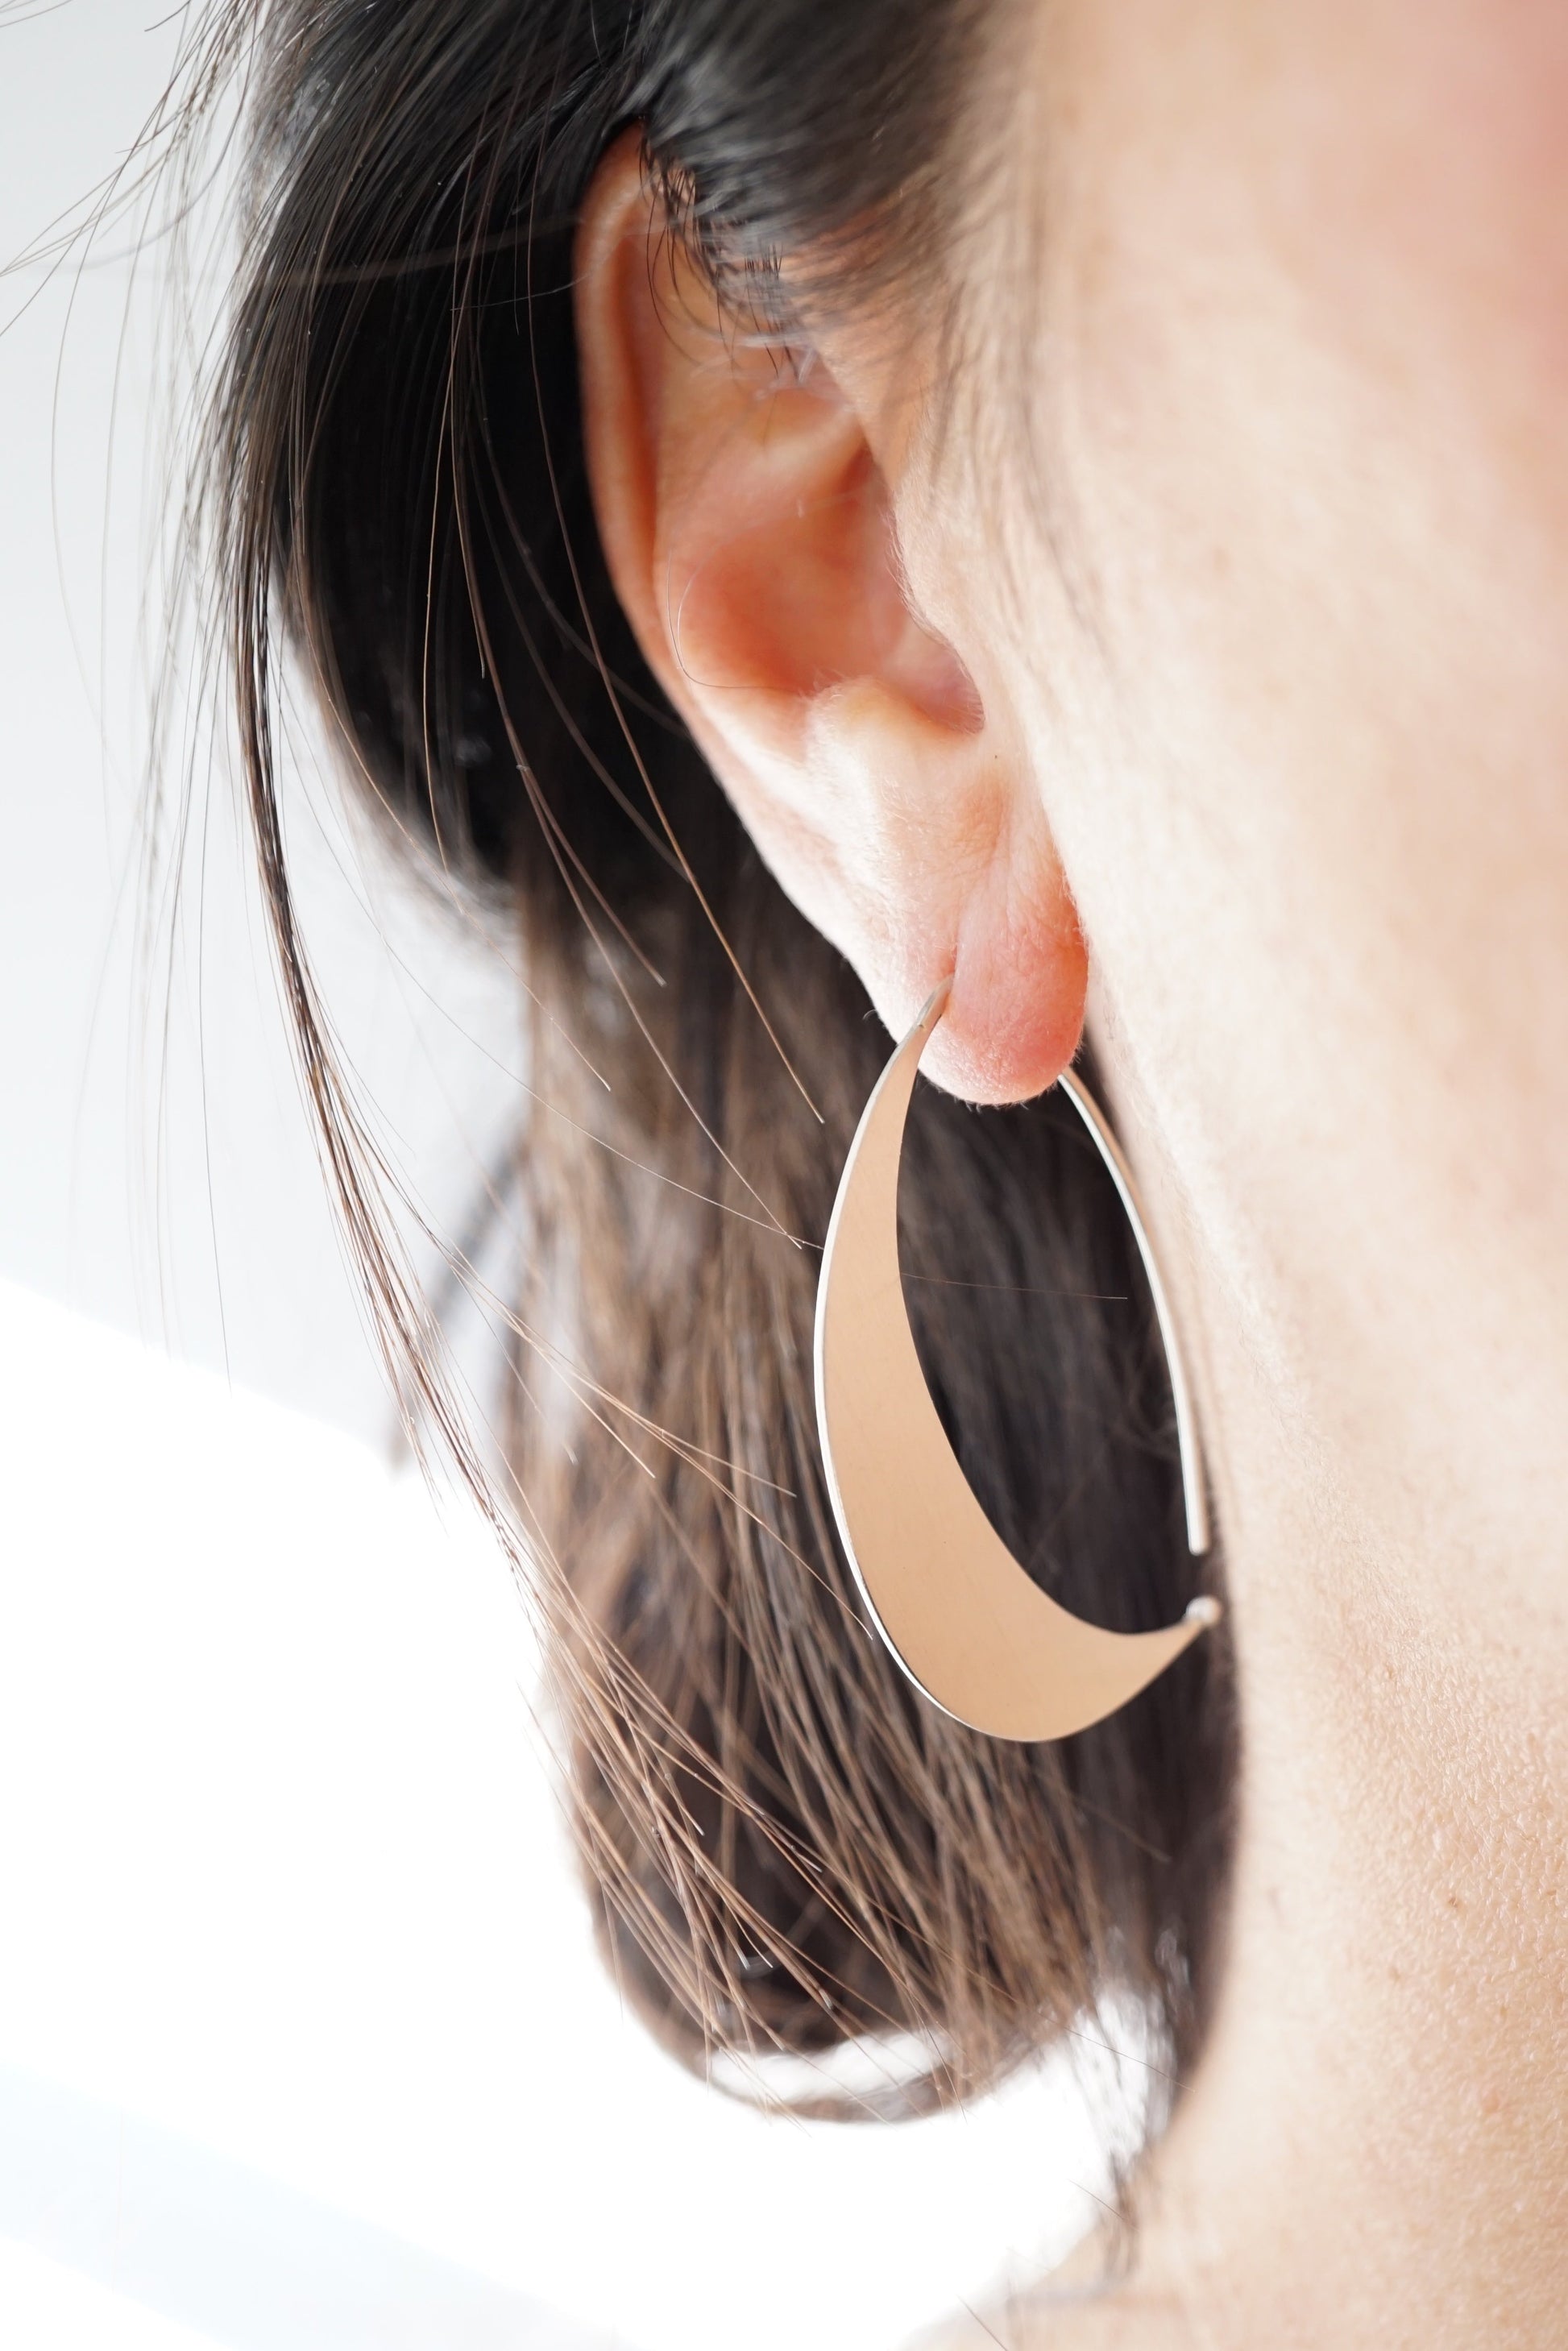 silver crescent earrings - Lumenrose